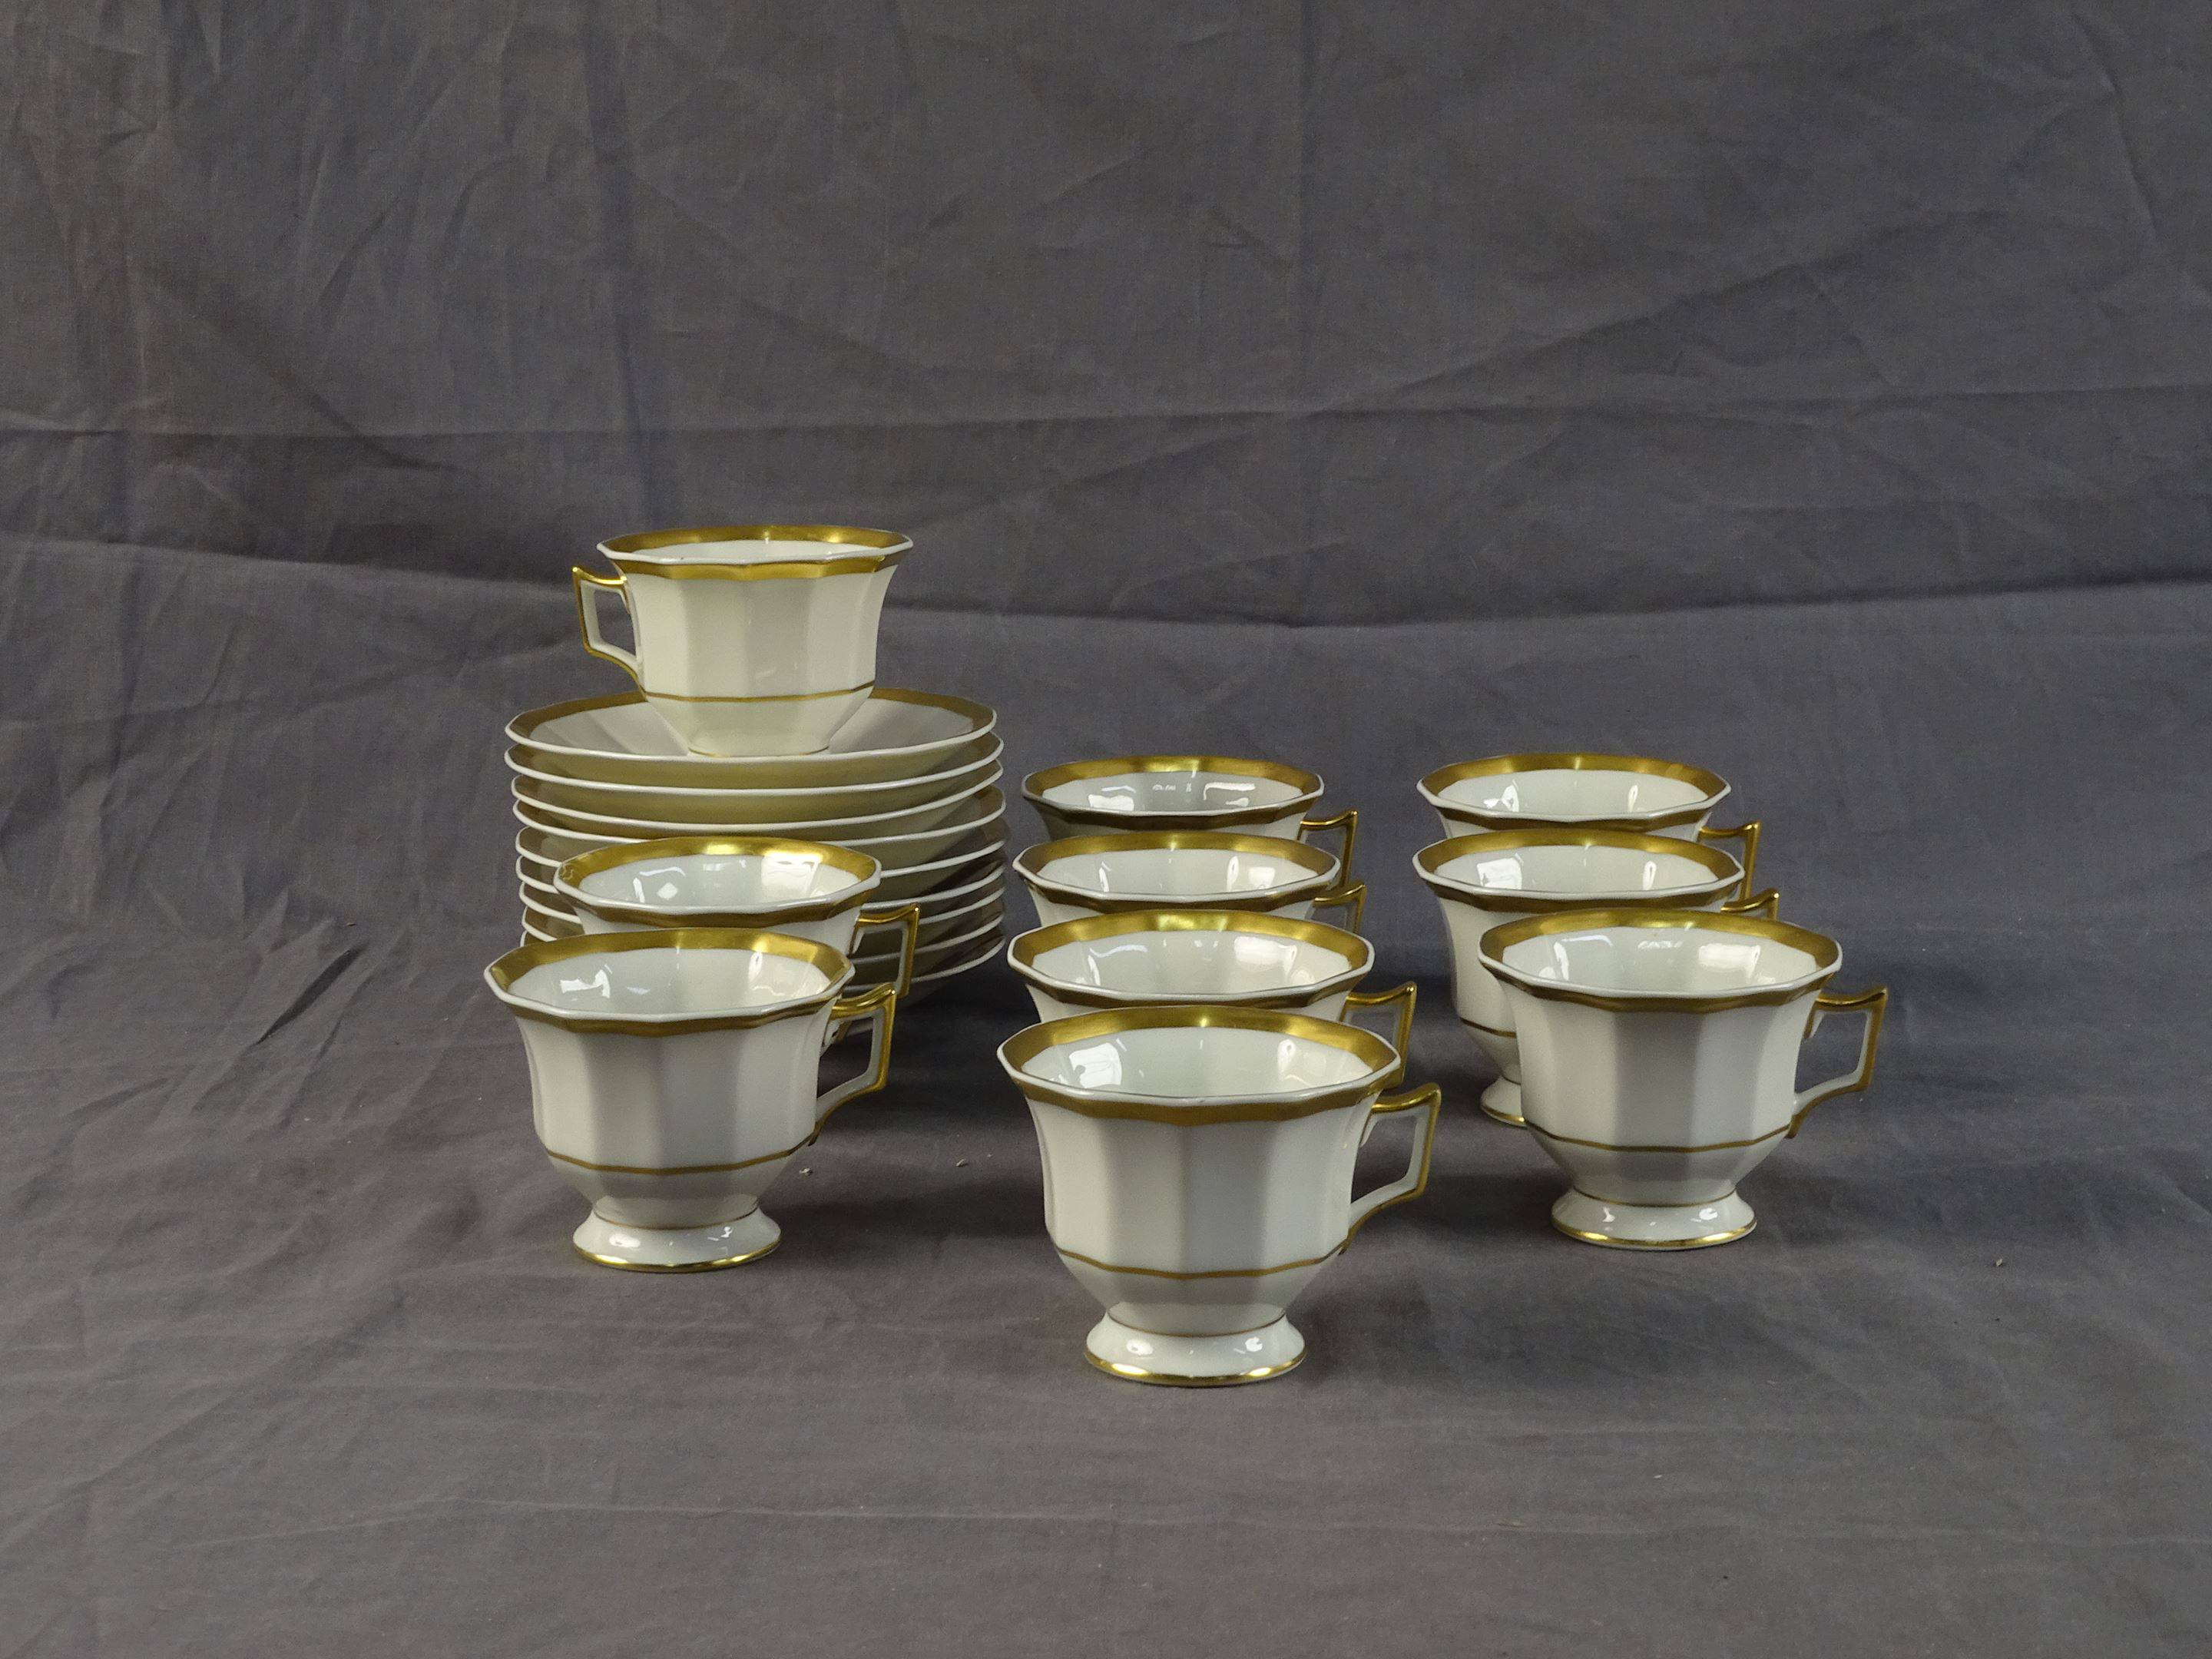 REYNAUD - Dix tasses et neuf sous-tasses en porcelaine crème à liseré or